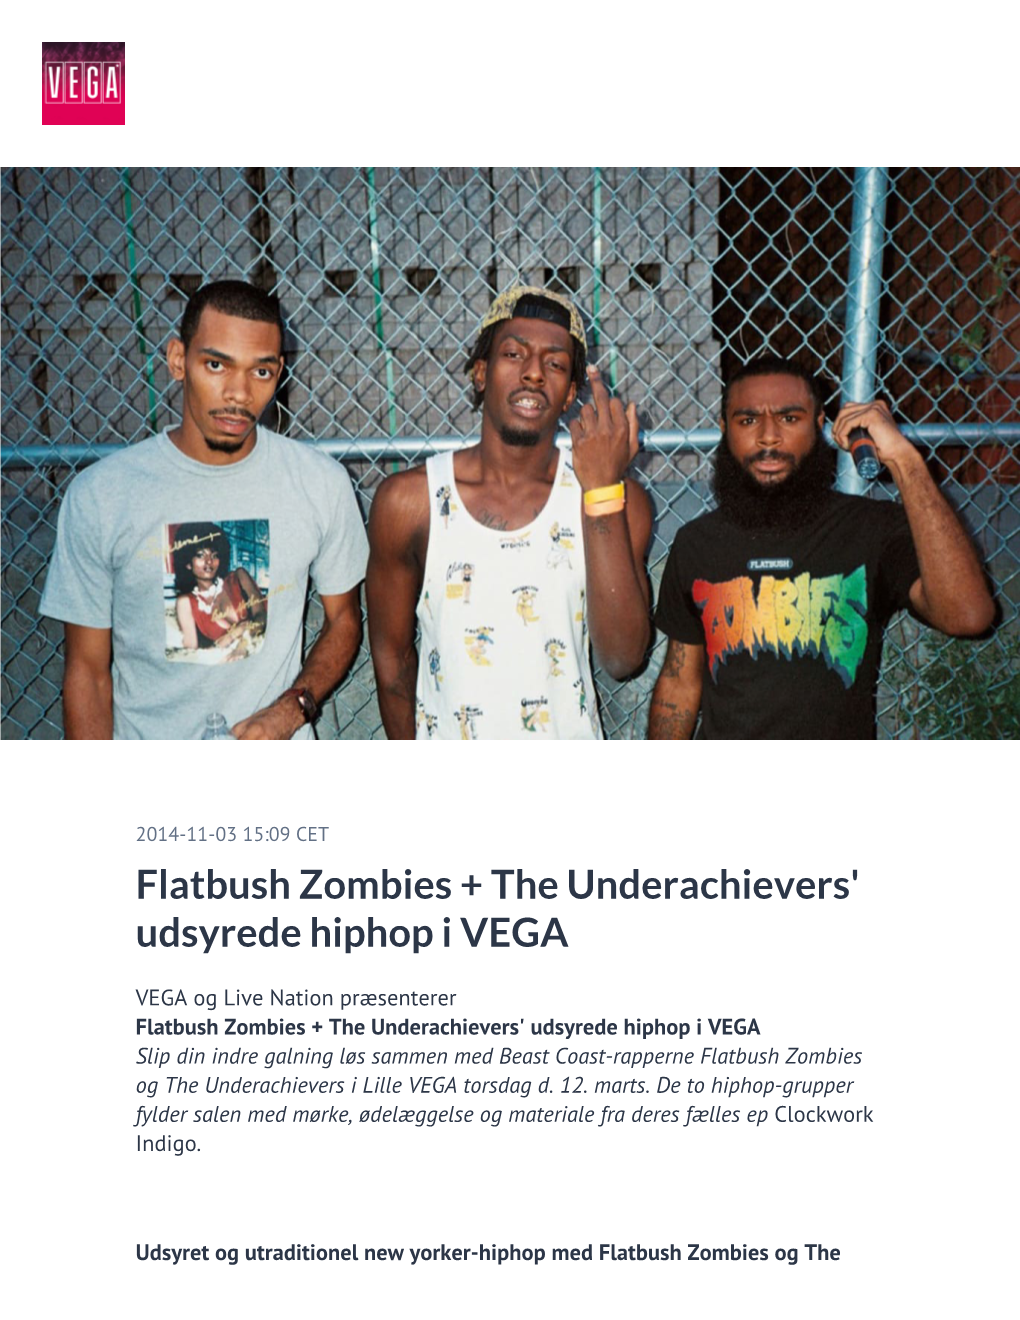 Flatbush Zombies + the Underachievers' Udsyrede Hiphop I VEGA